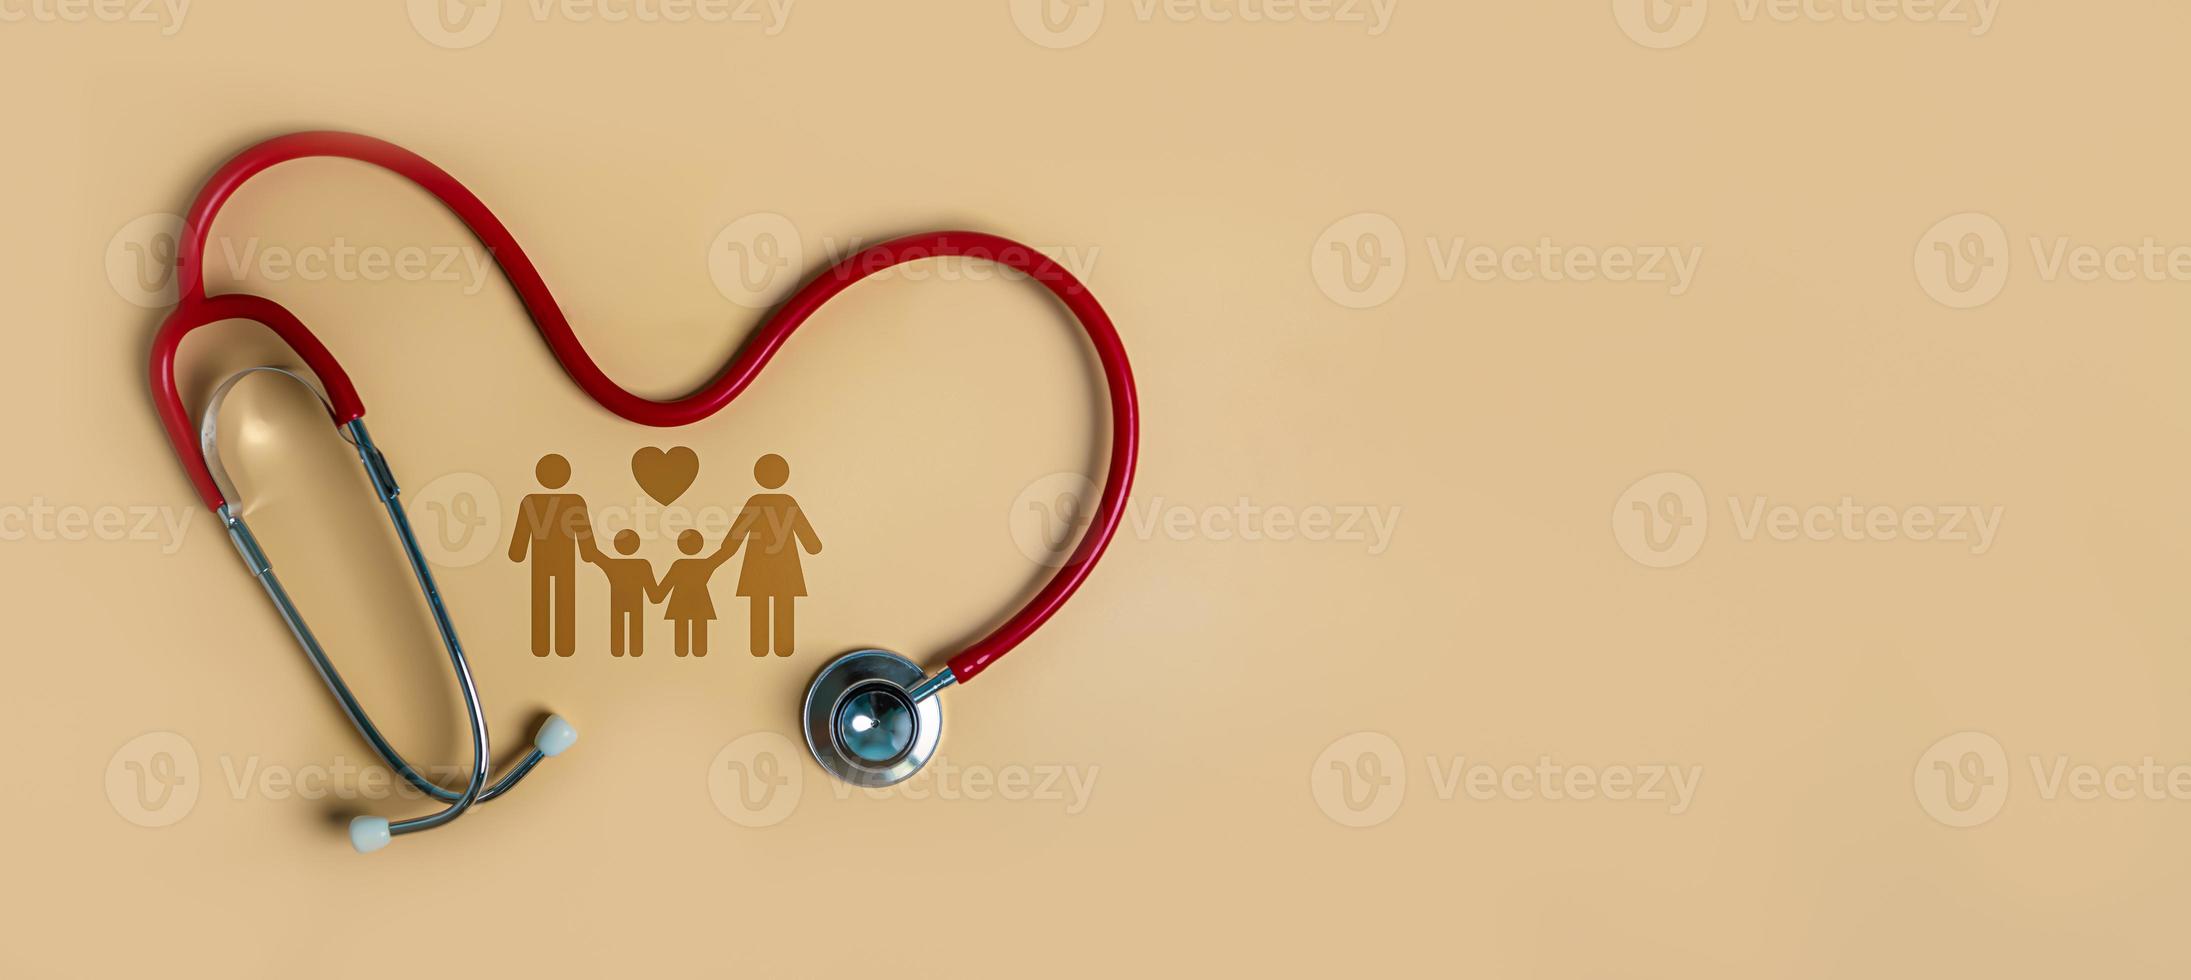 vista superior do estetoscópio médico e família de ícones em fundo laranja claro. conceito de seguro de saúde familiar. foto